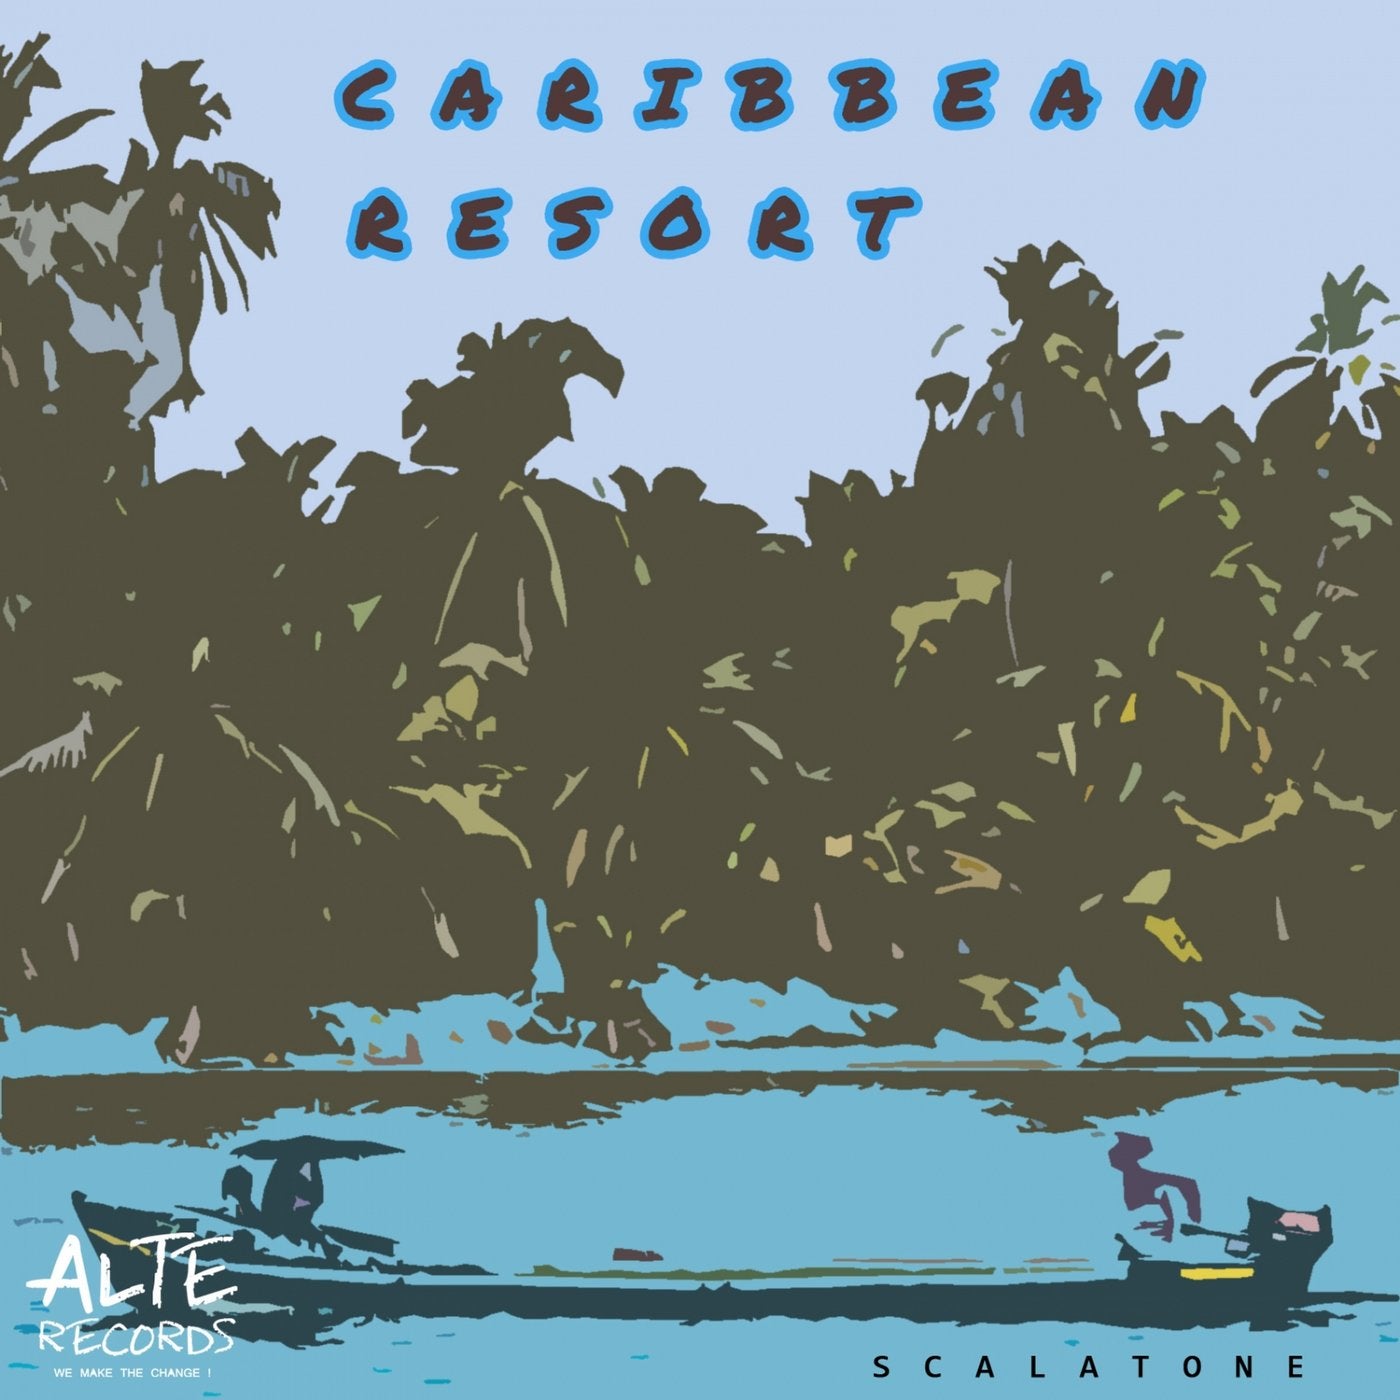 Caribbean Resort